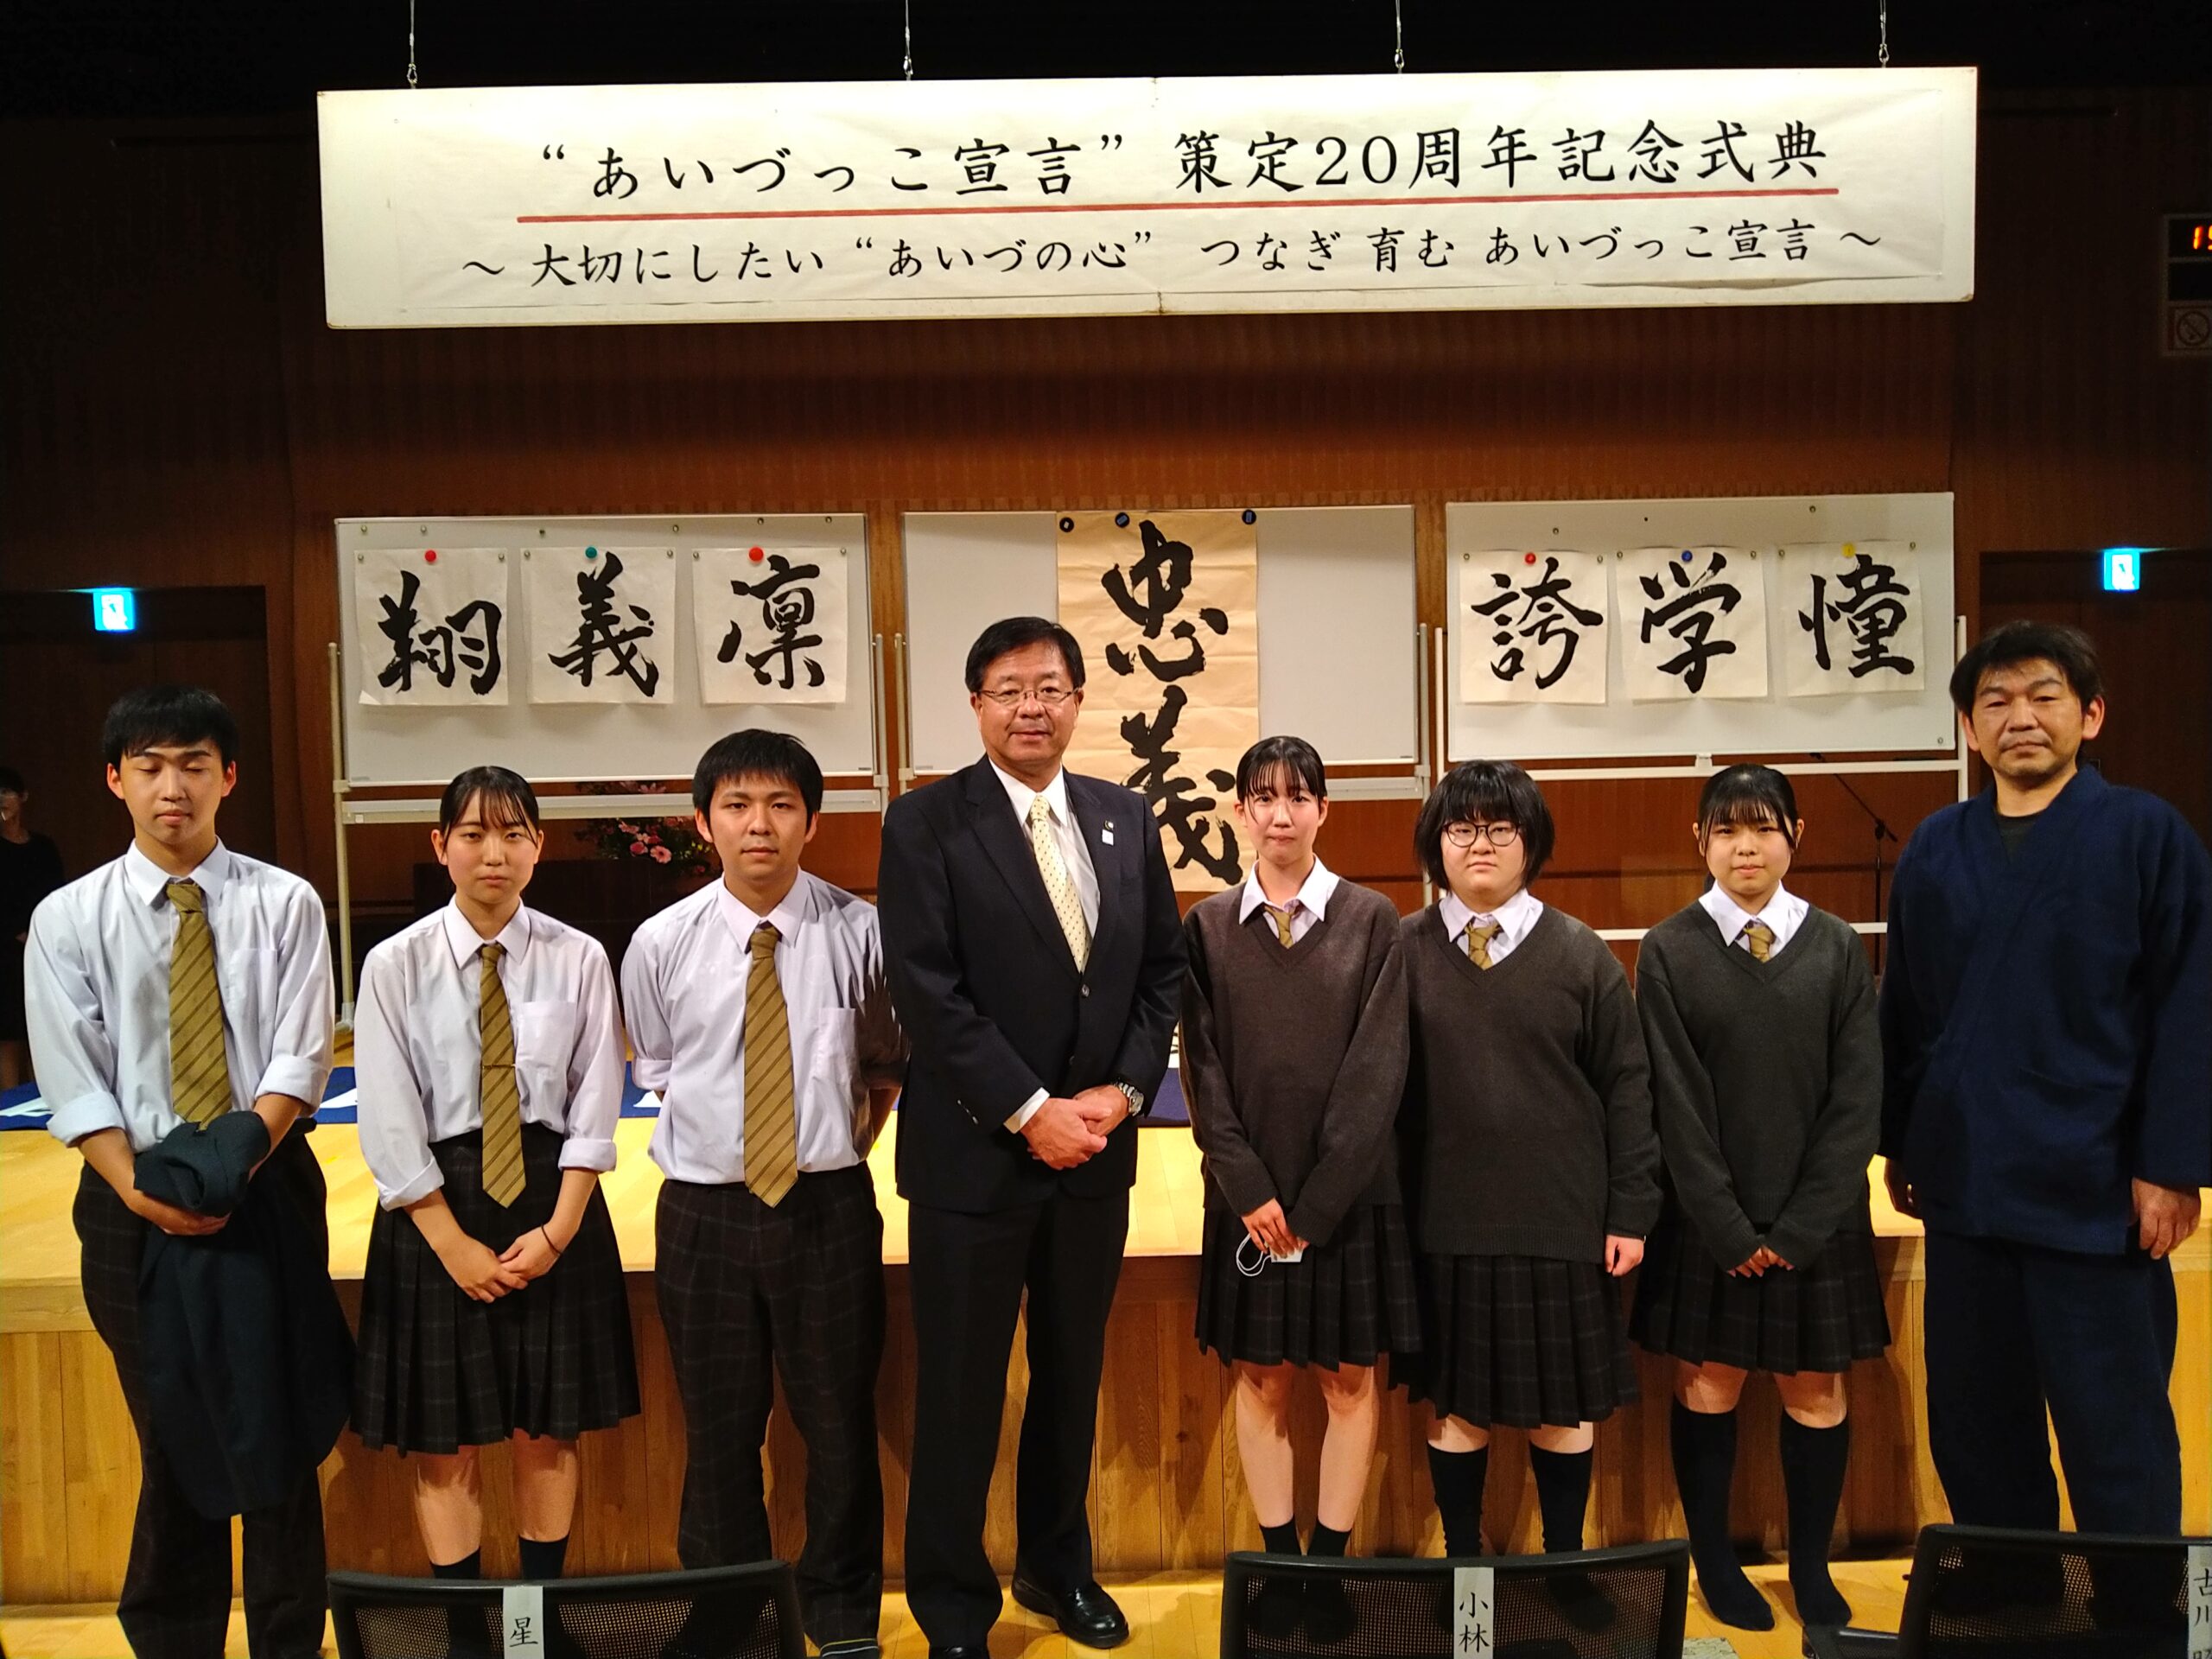 あいづっこ宣言」策定20周年記念式典に本校生徒が書道パフォーマーとして実演を行いました | 会津北嶺高等学校